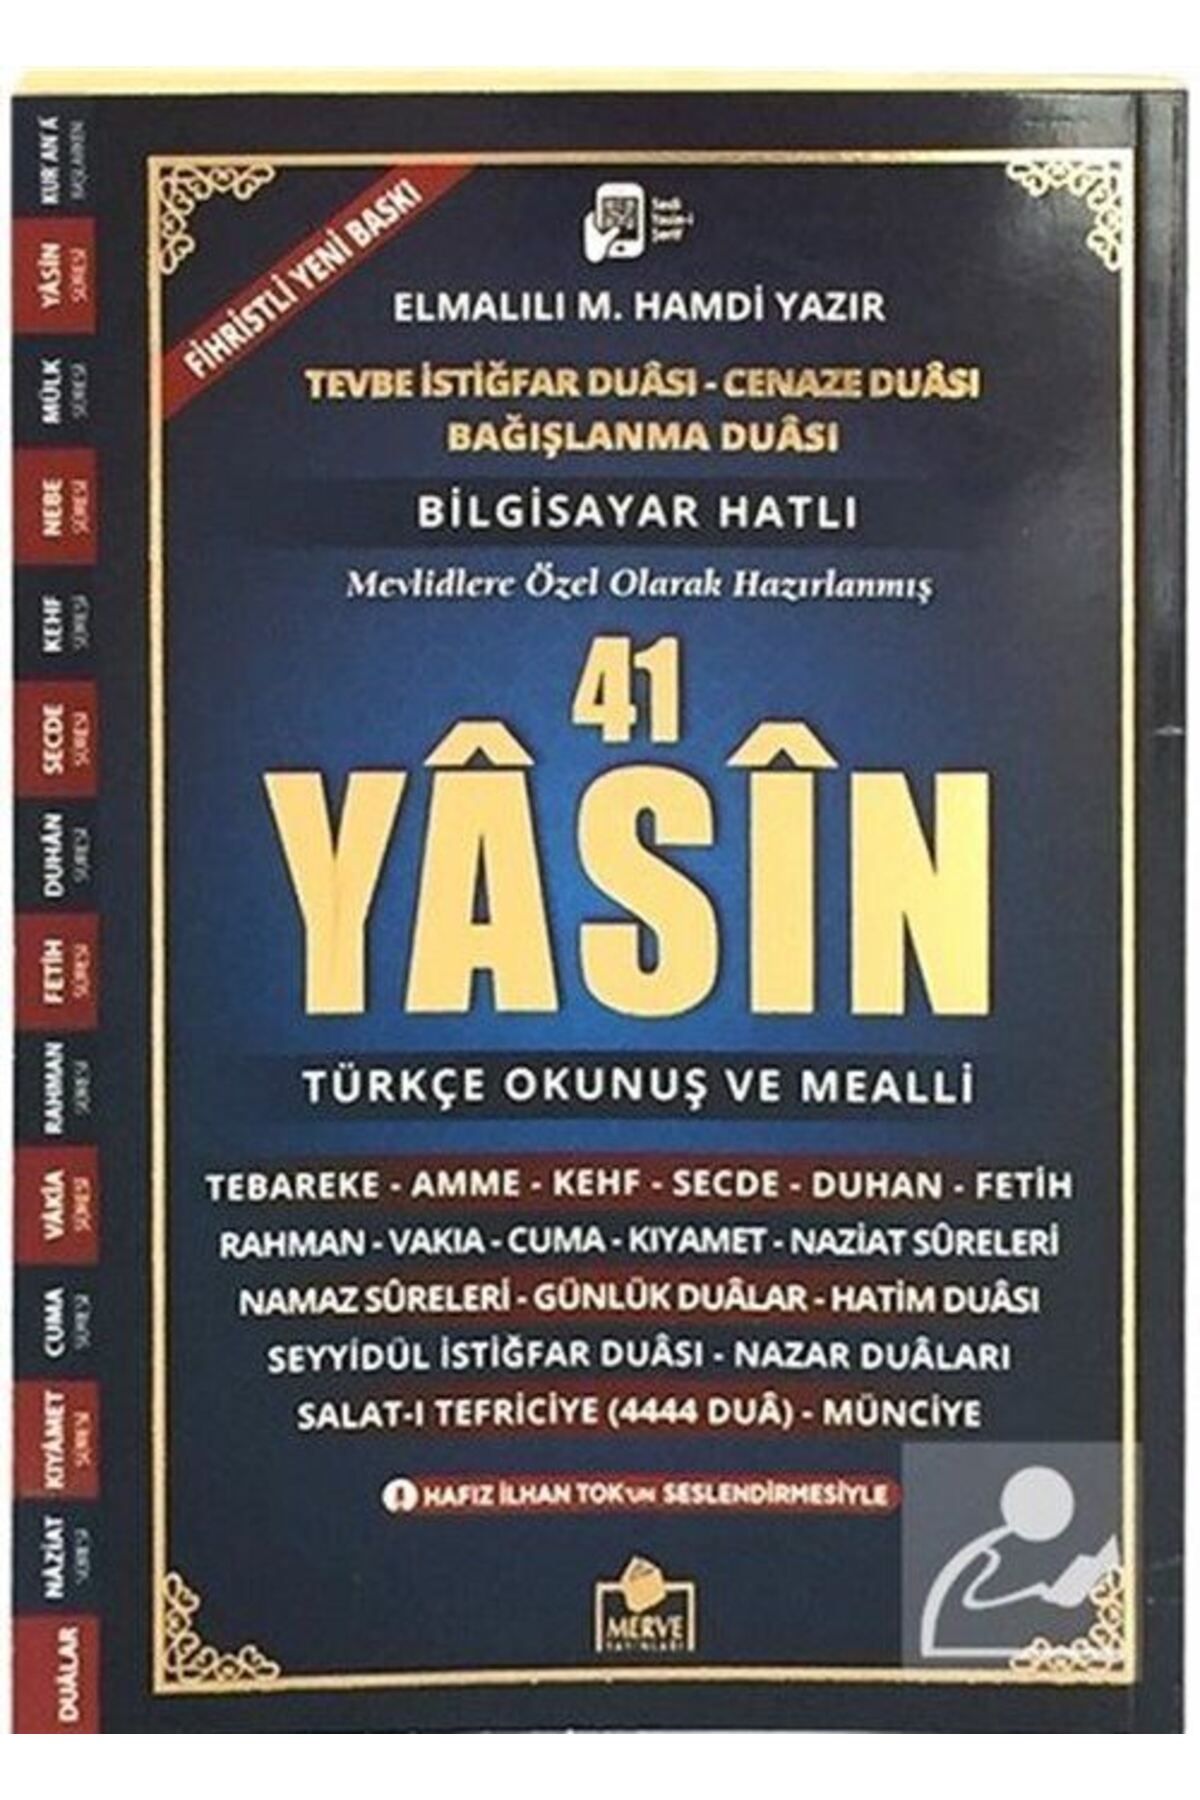 Merve Yayınları Bilgisayar Hatlı 41 Yasin Türkçe Okunuşlu Ve Mealli Cep Boy 9x13 Cm